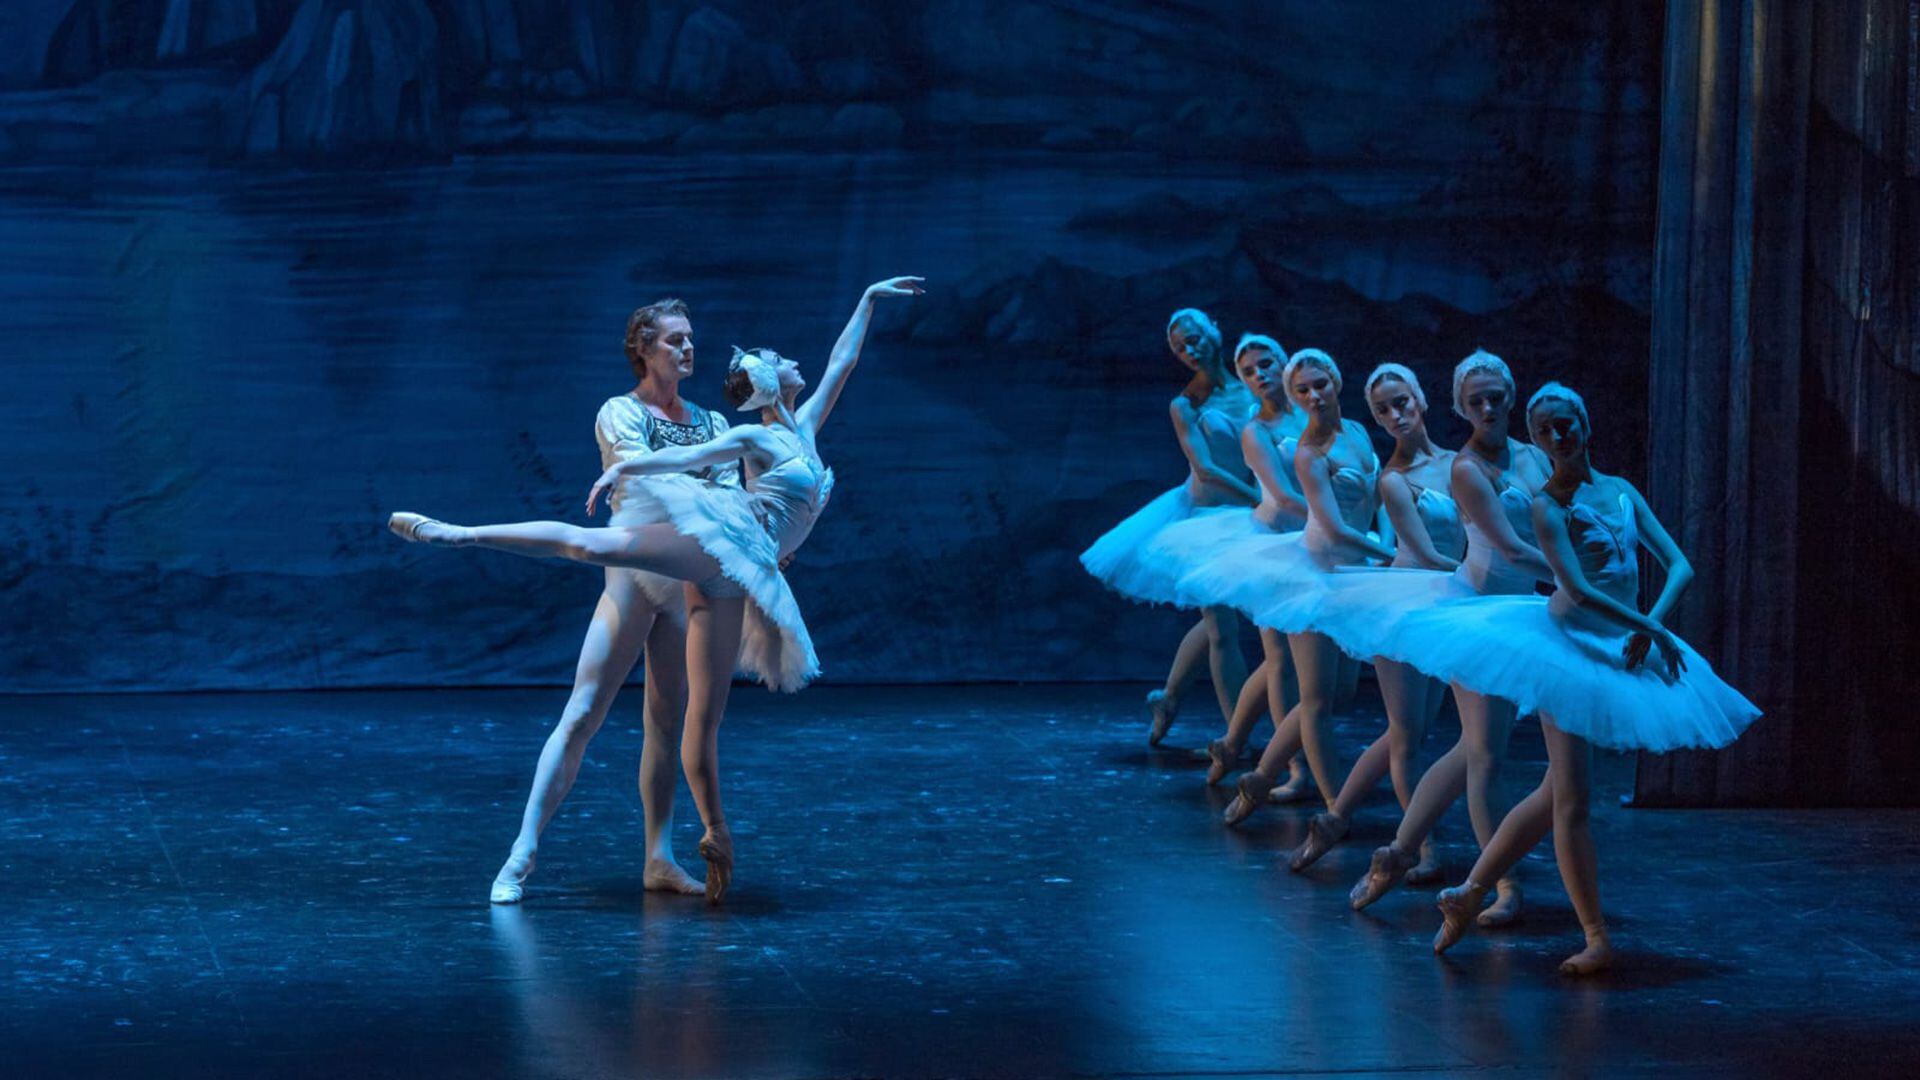 Alexander Volchkov interpretará el rol principal de "El lago de los cisnes" junto al Ballet Intercontinental en el Teatro Avenida de Buenos Aires